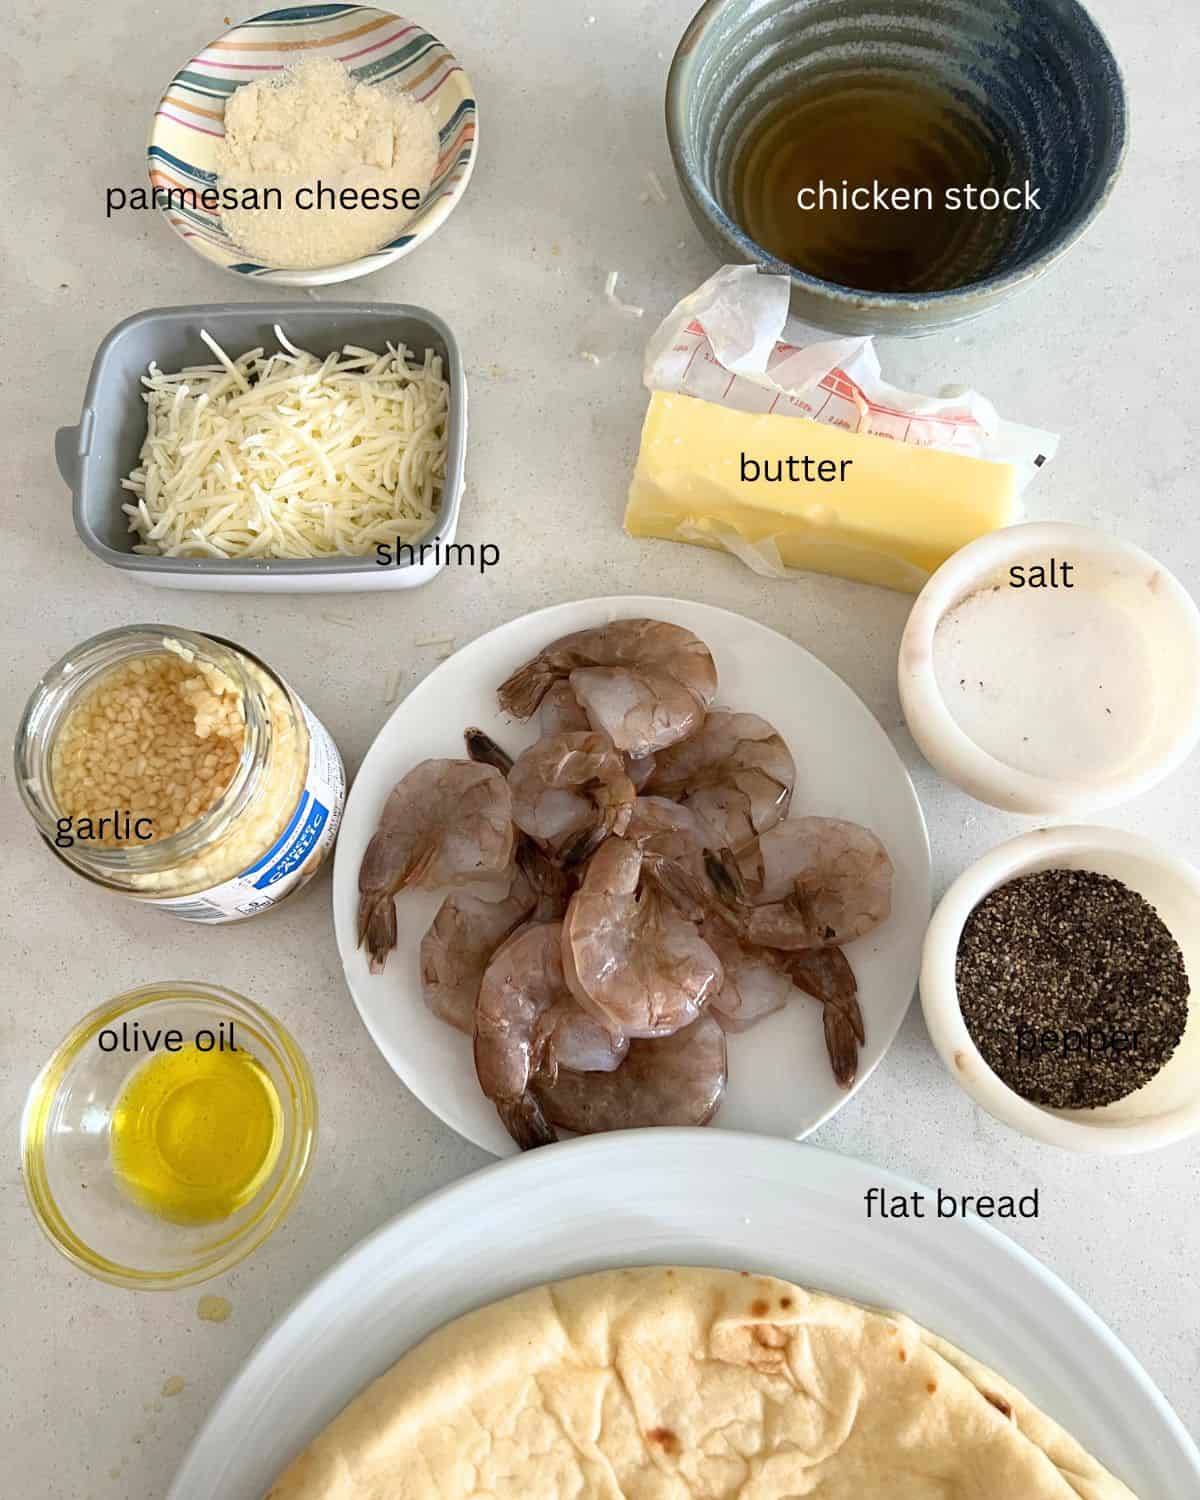 Ingredients for shrimp scampi pizza. 